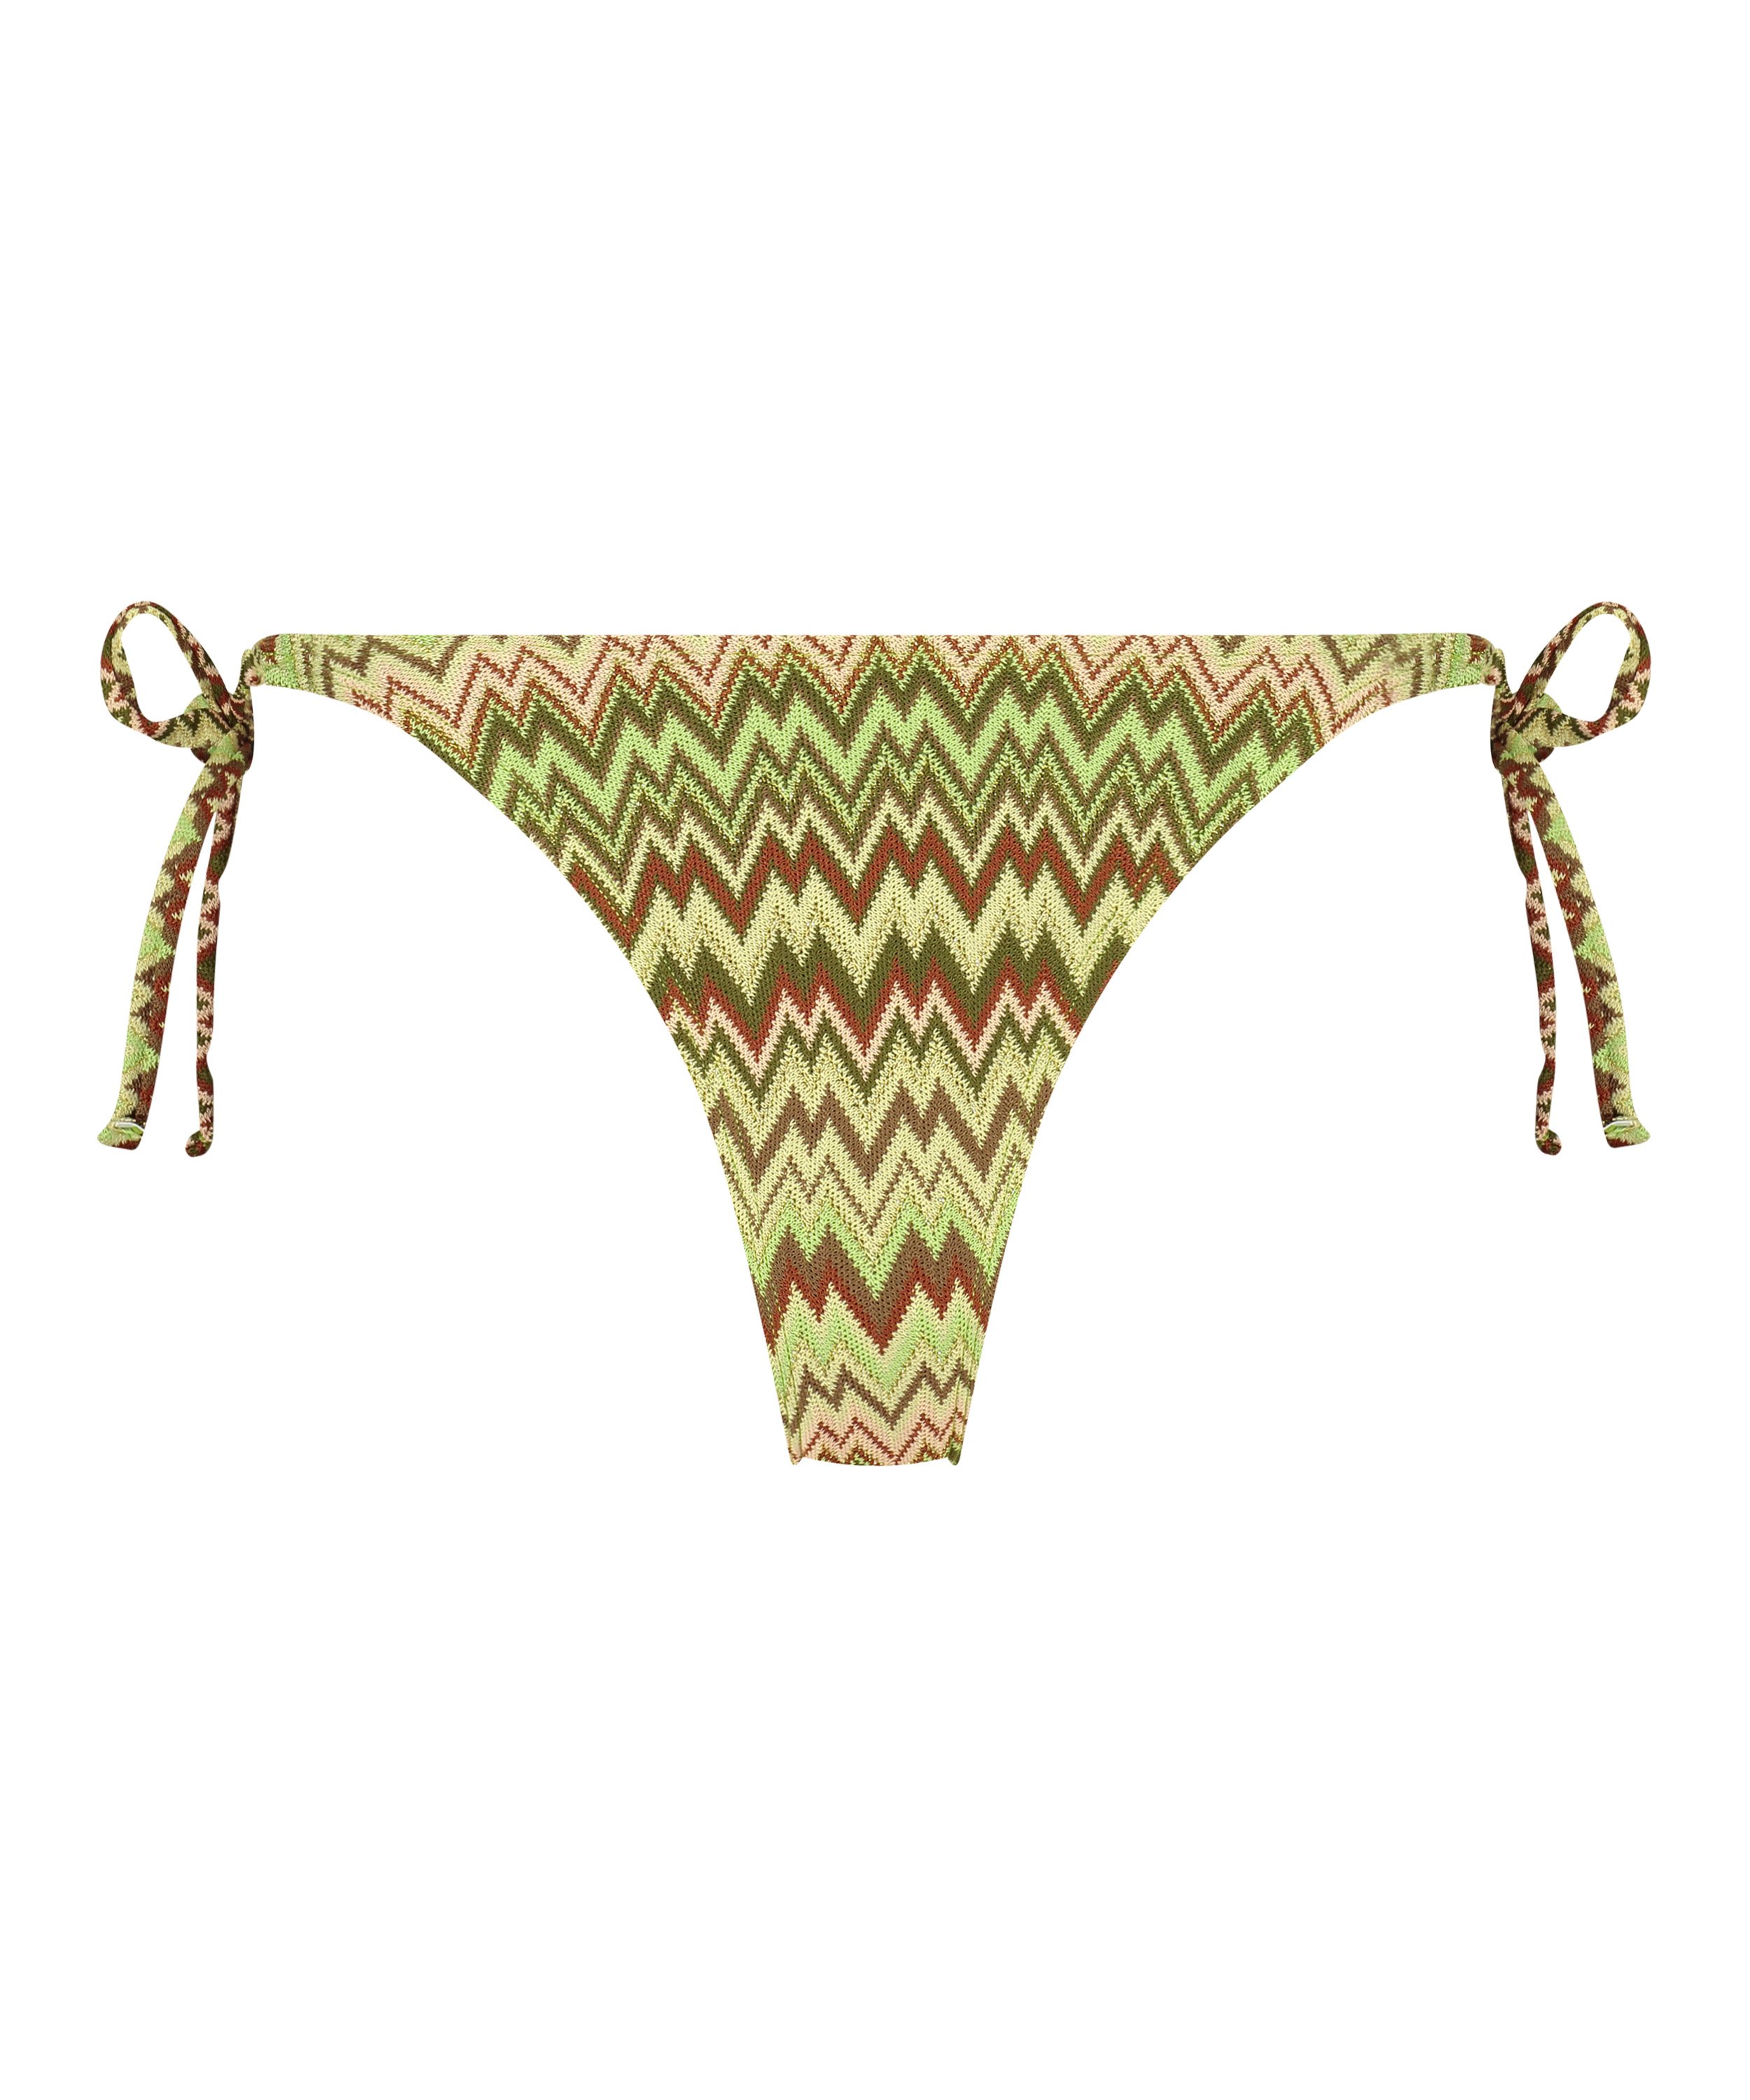 Alcapulco High-Leg Bikini Bottoms, Green, main